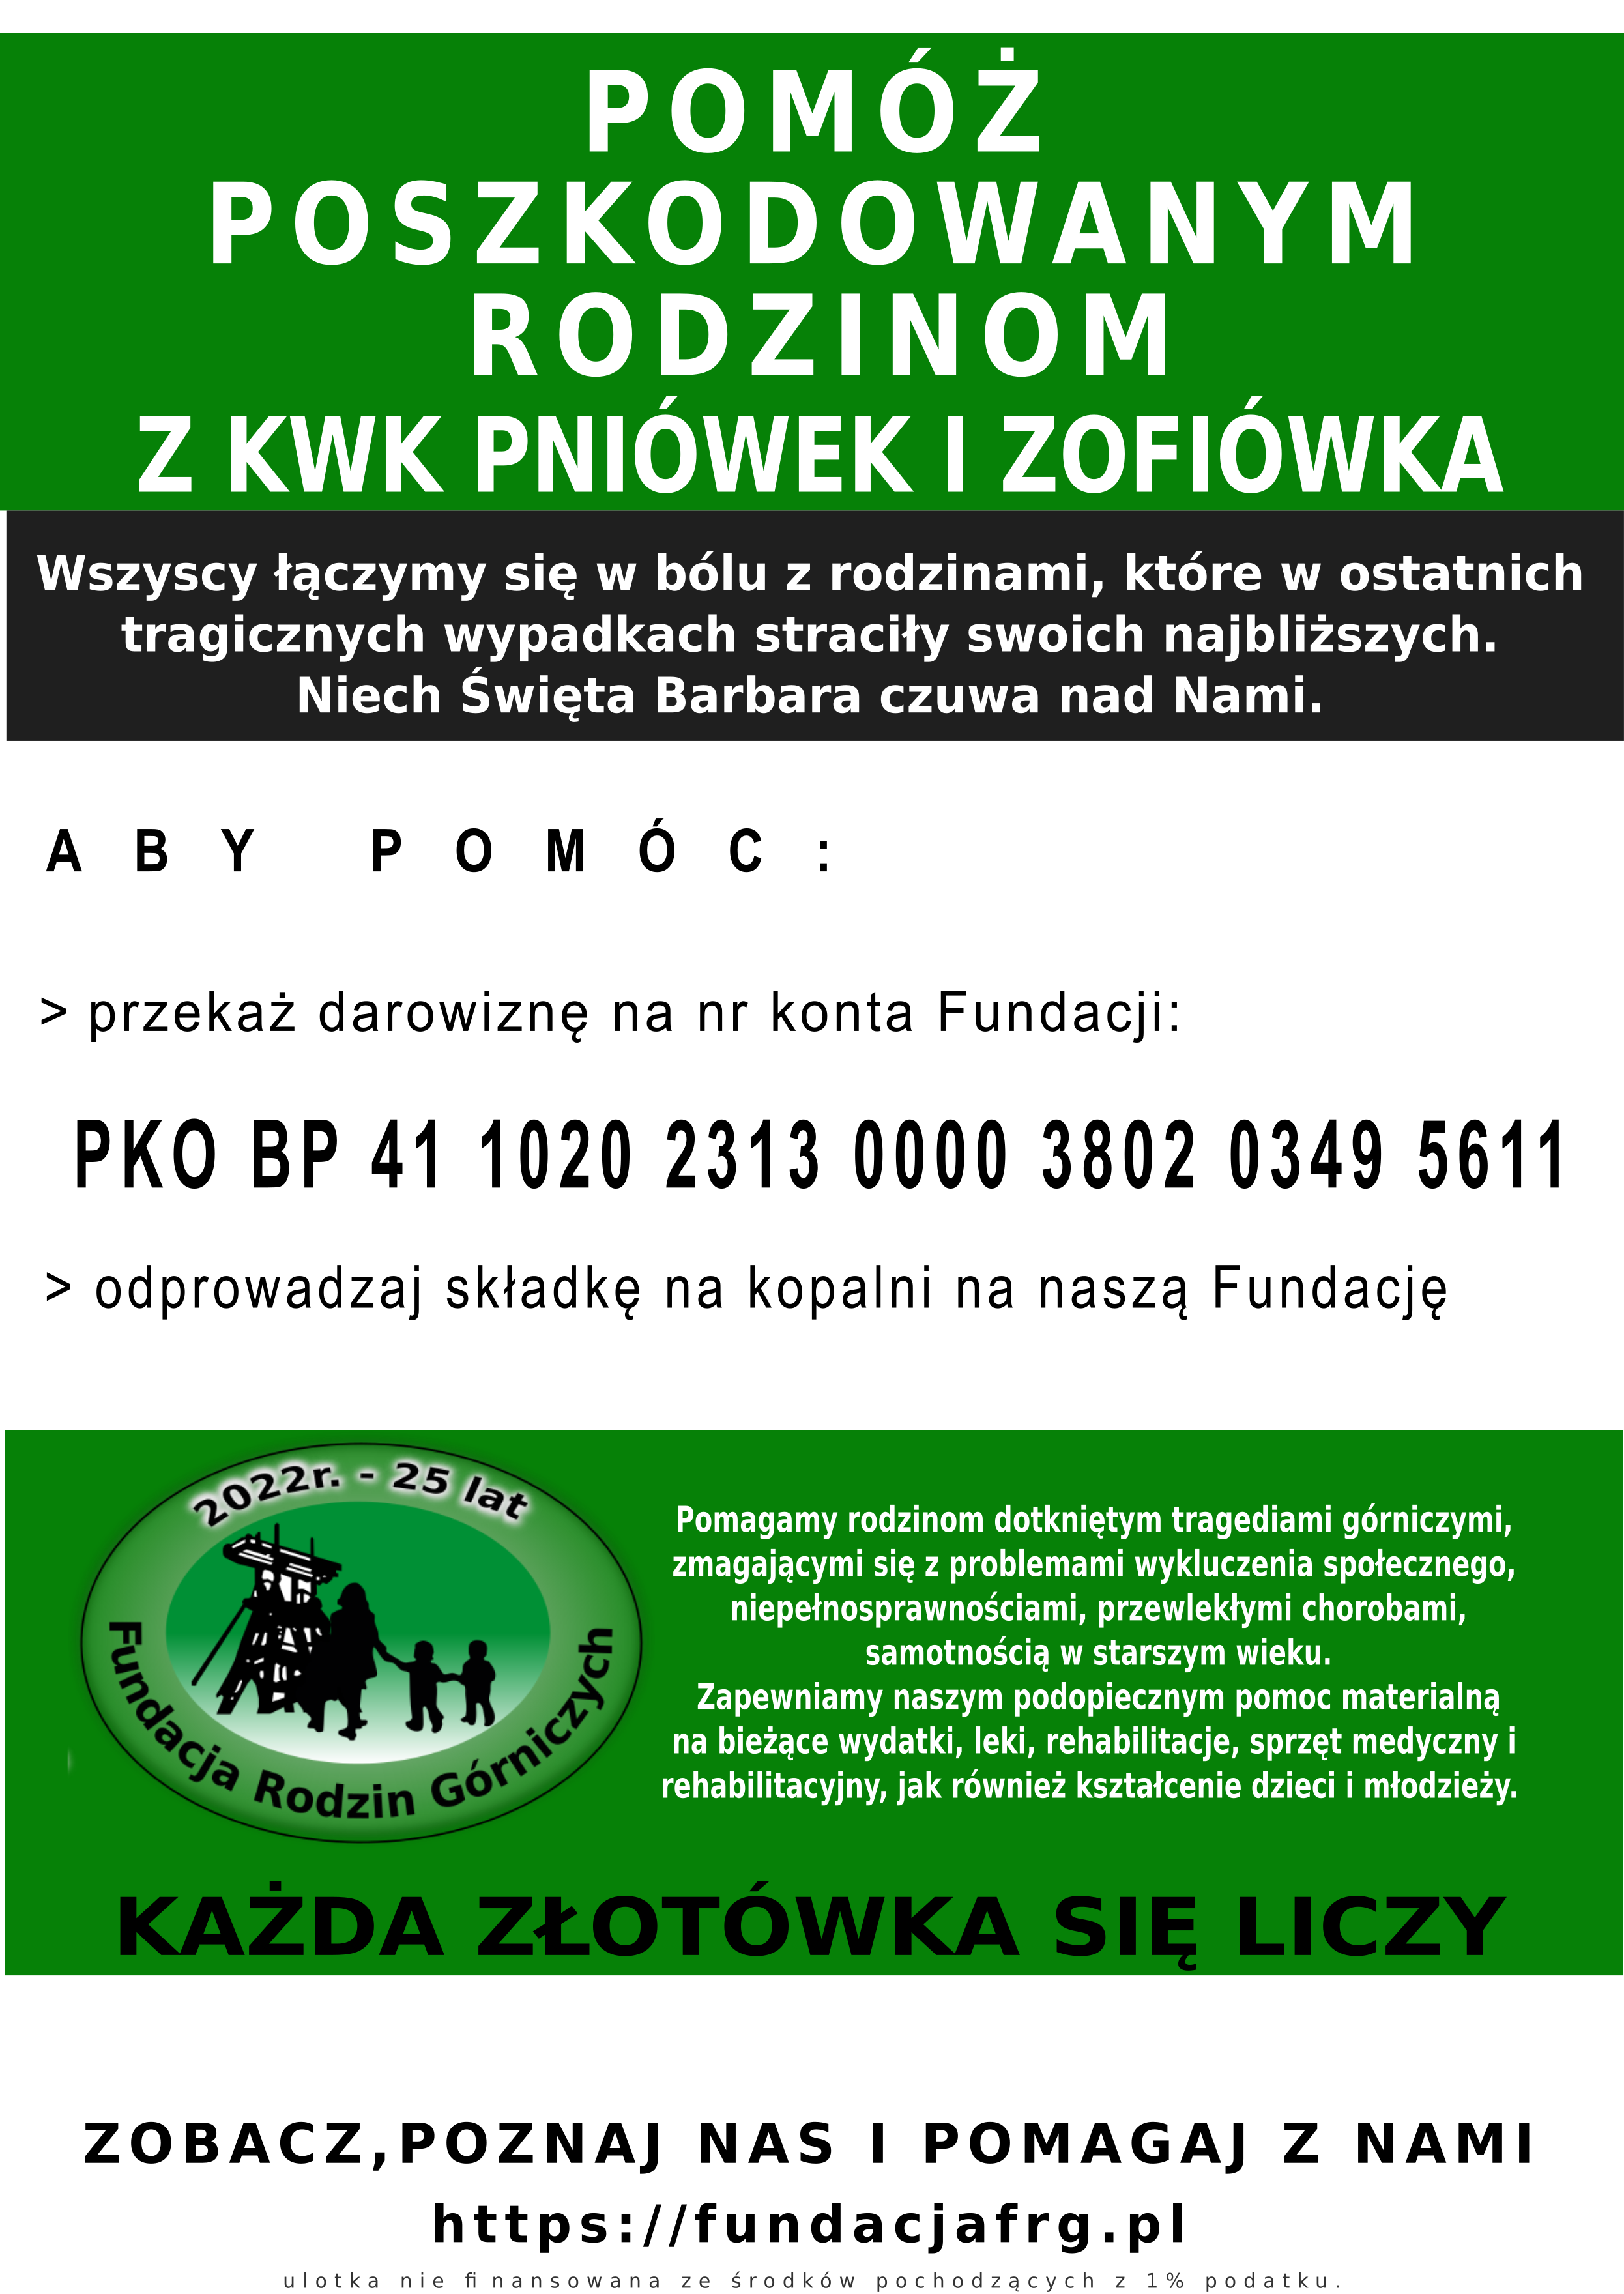 Fundacja Rodzin Górniczych wobec tragicznych wypadków w KWK Pniówek i Zofiówka